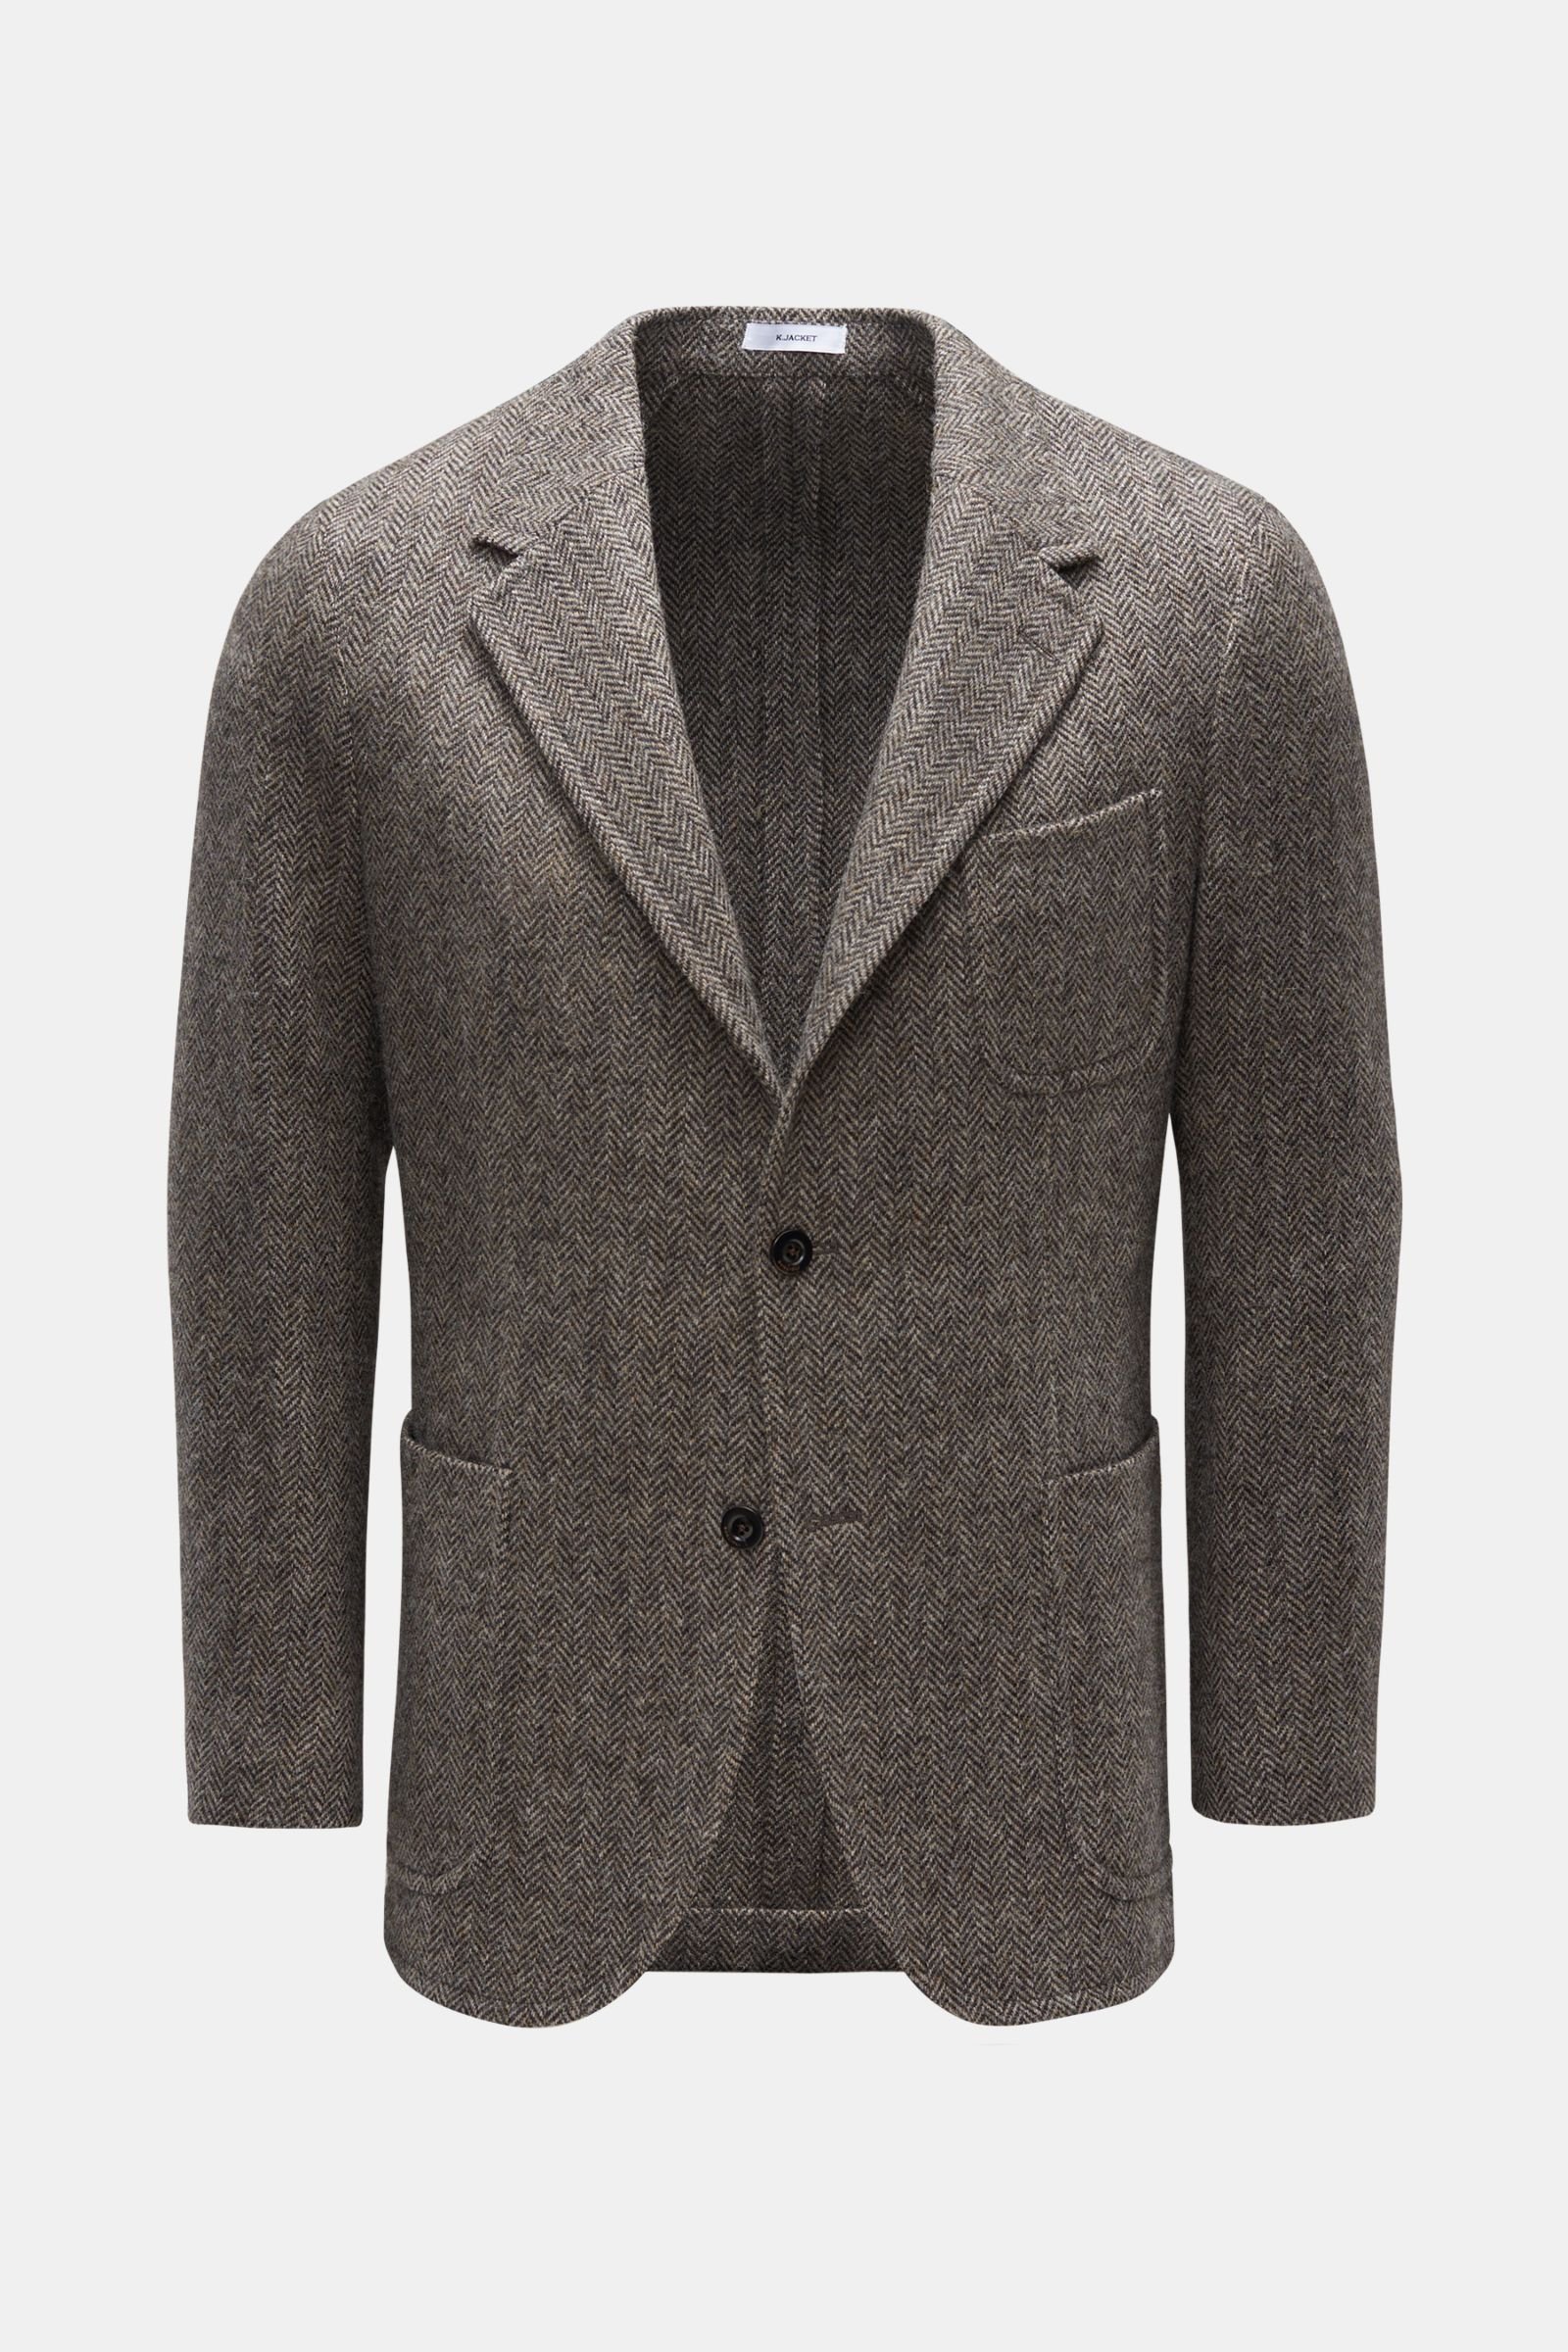 Smart-casual jacket 'K. Jacket grey-brown/black patterned